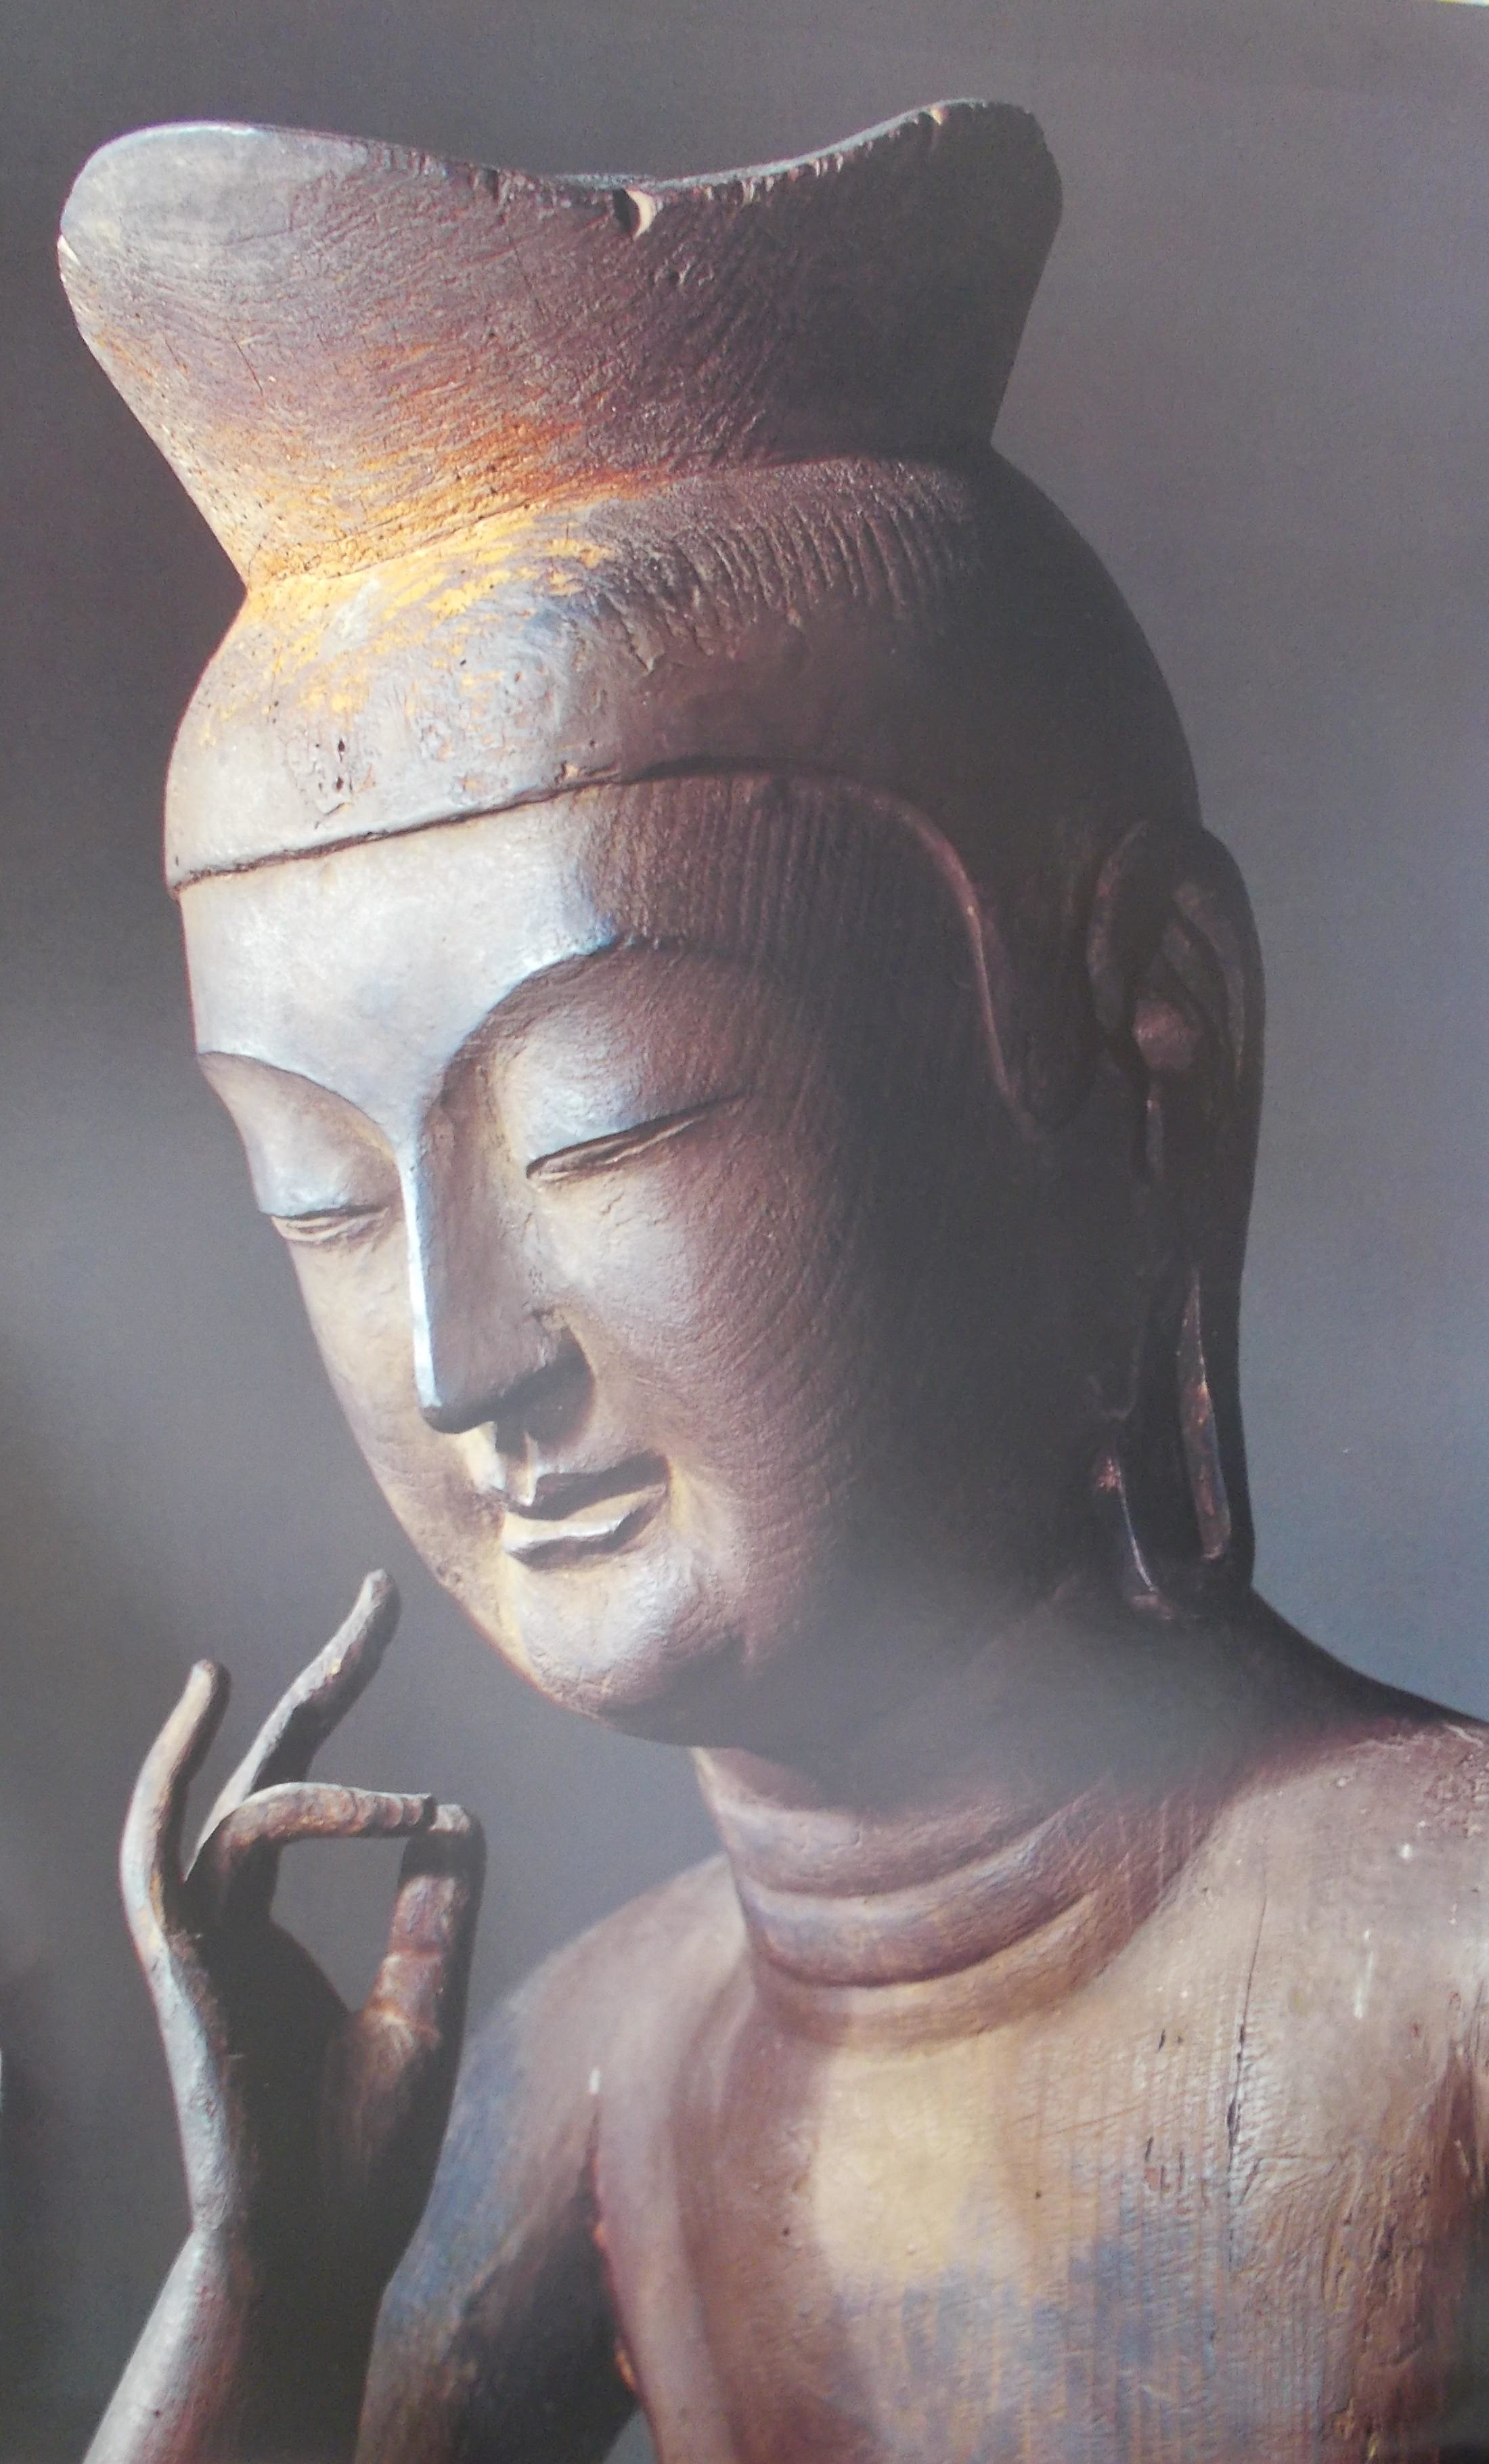 写真と絵で見る仏教 堀田努の仏教談論 仏教談義 仏教講義 仏教の話